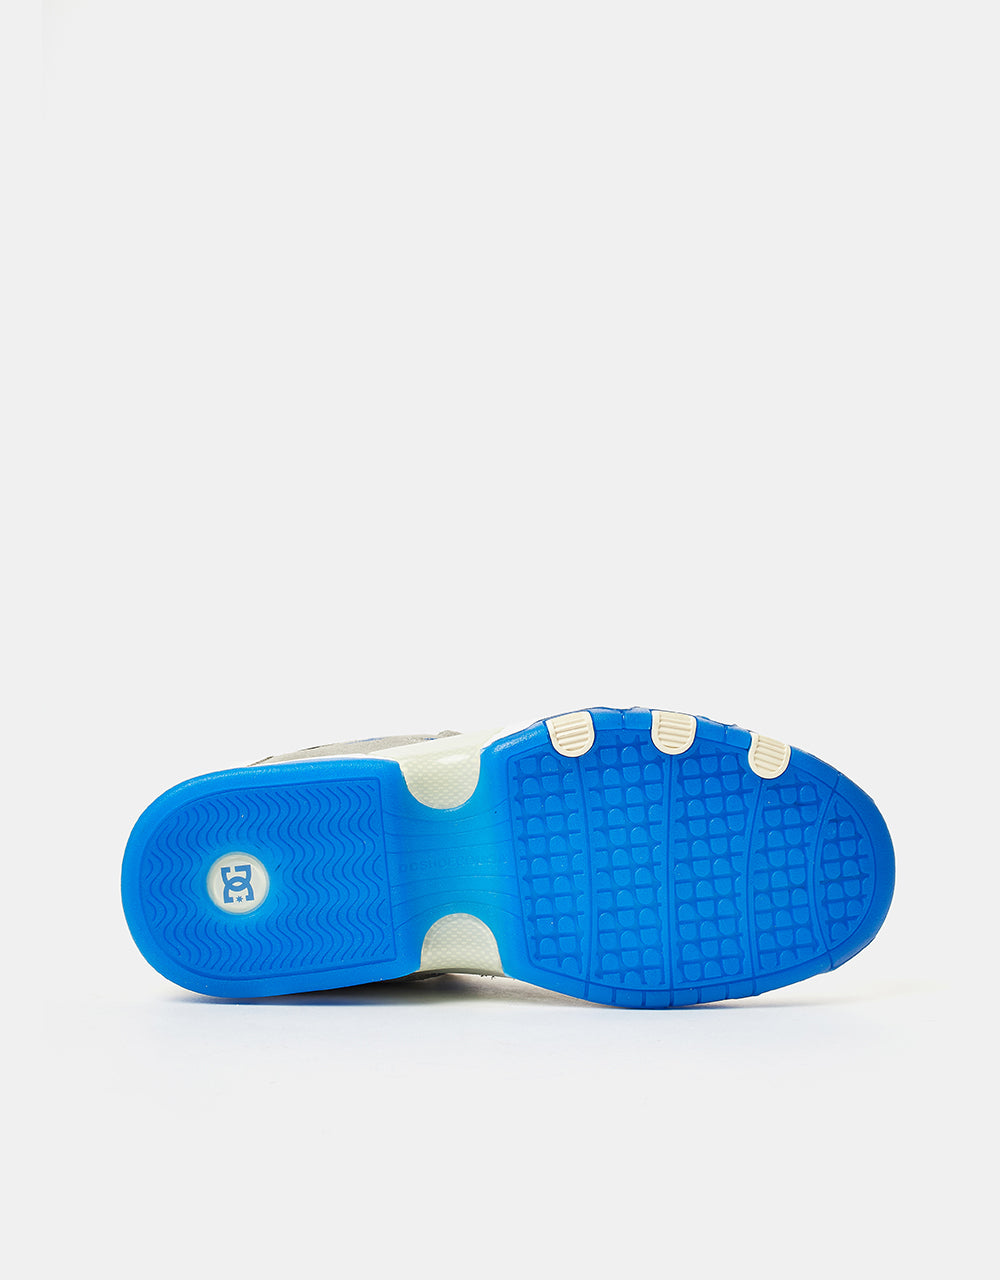 DC Metric Shanahan Skate Shoes - Grey/White/Blue